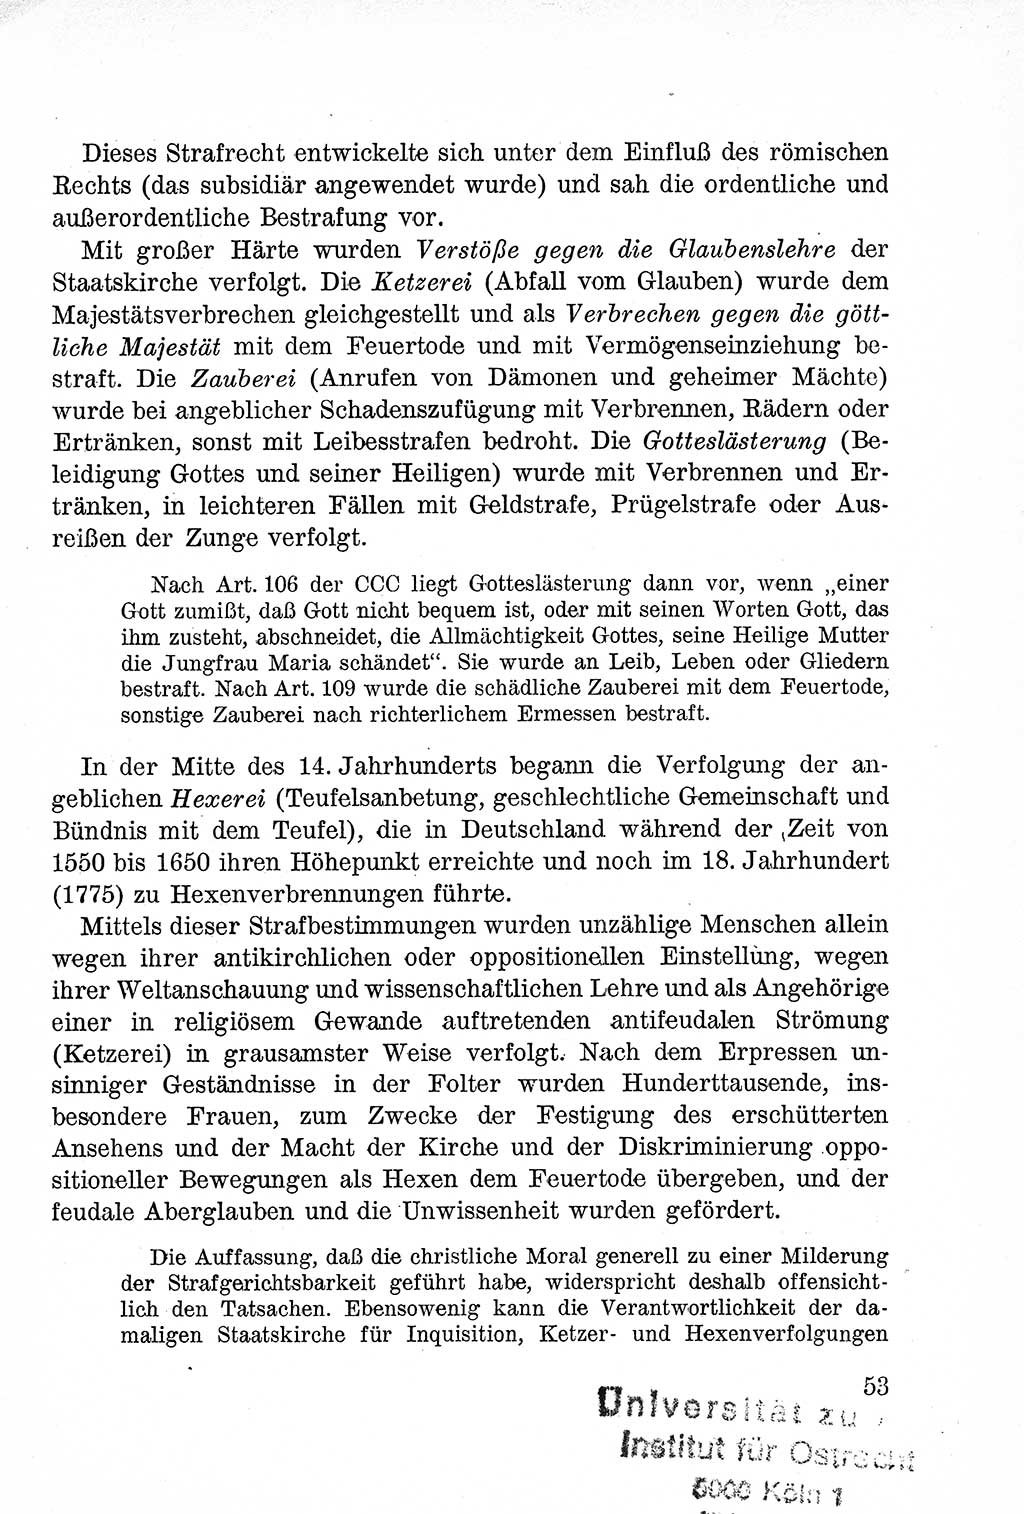 Lehrbuch des Strafrechts der Deutschen Demokratischen Republik (DDR), Allgemeiner Teil 1957, Seite 53 (Lb. Strafr. DDR AT 1957, S. 53)